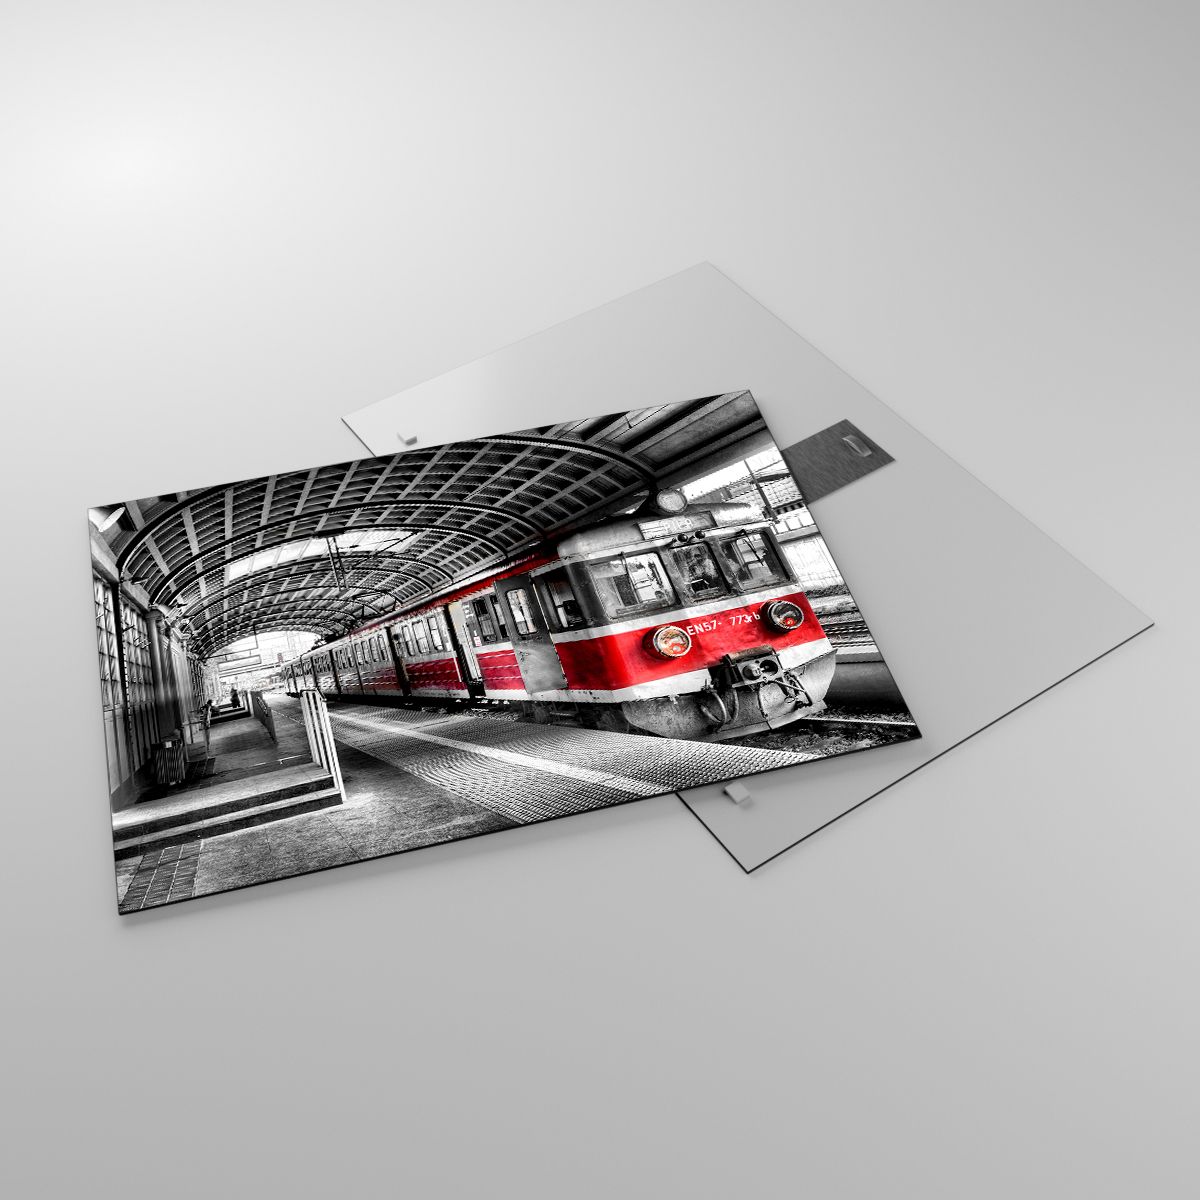 Glasbild Personenzug, Glasbild Bahnhof, Glasbild Plattform, Glasbild Lokomotive, Glasbild Schwarz Und Weiß